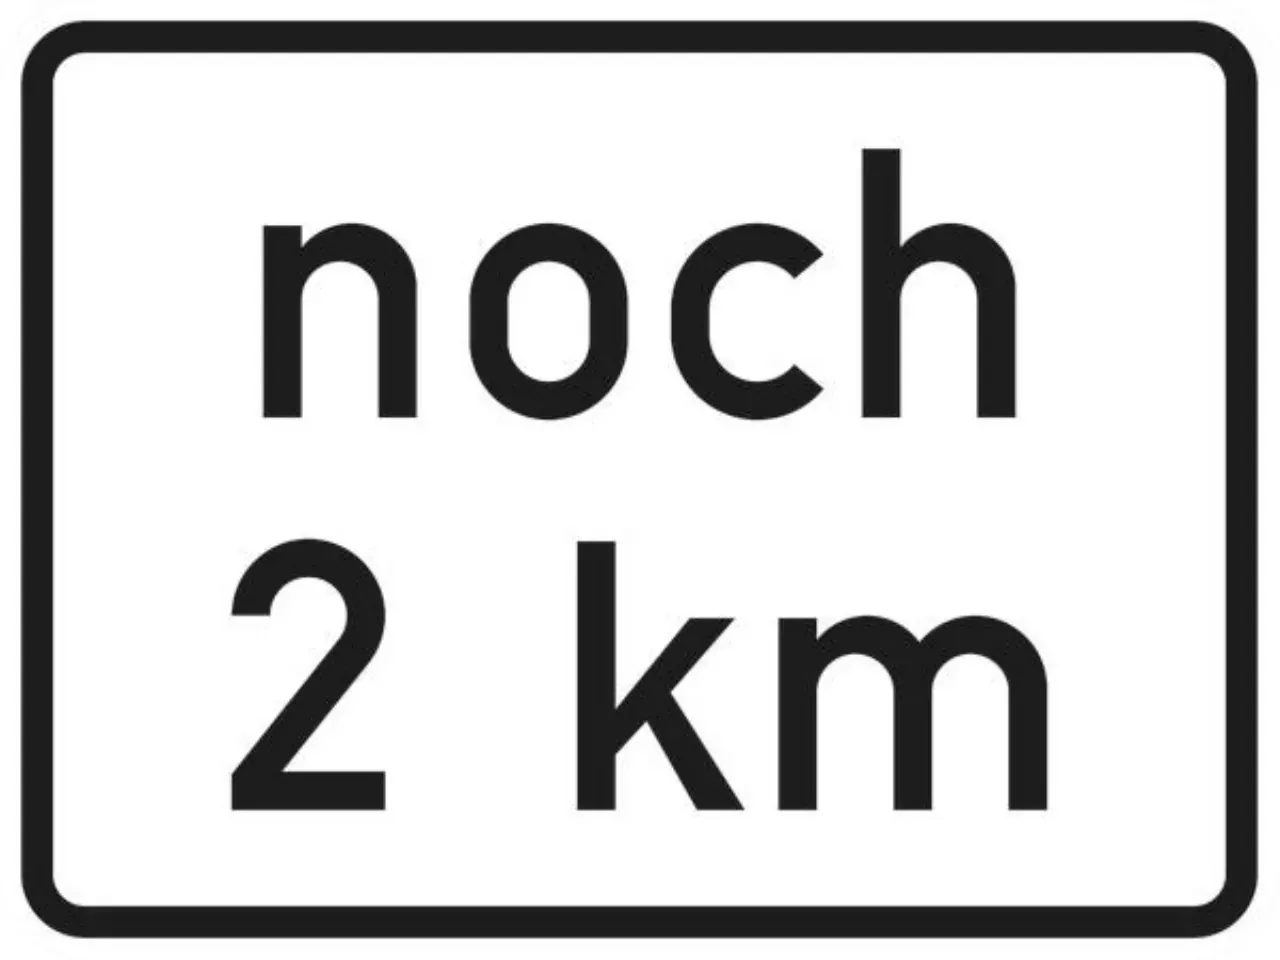 Verkehrszeichen 1001-33 noch . km (gemäß VwV-StVO in Tunneln) - 315x420 2 mm RA2